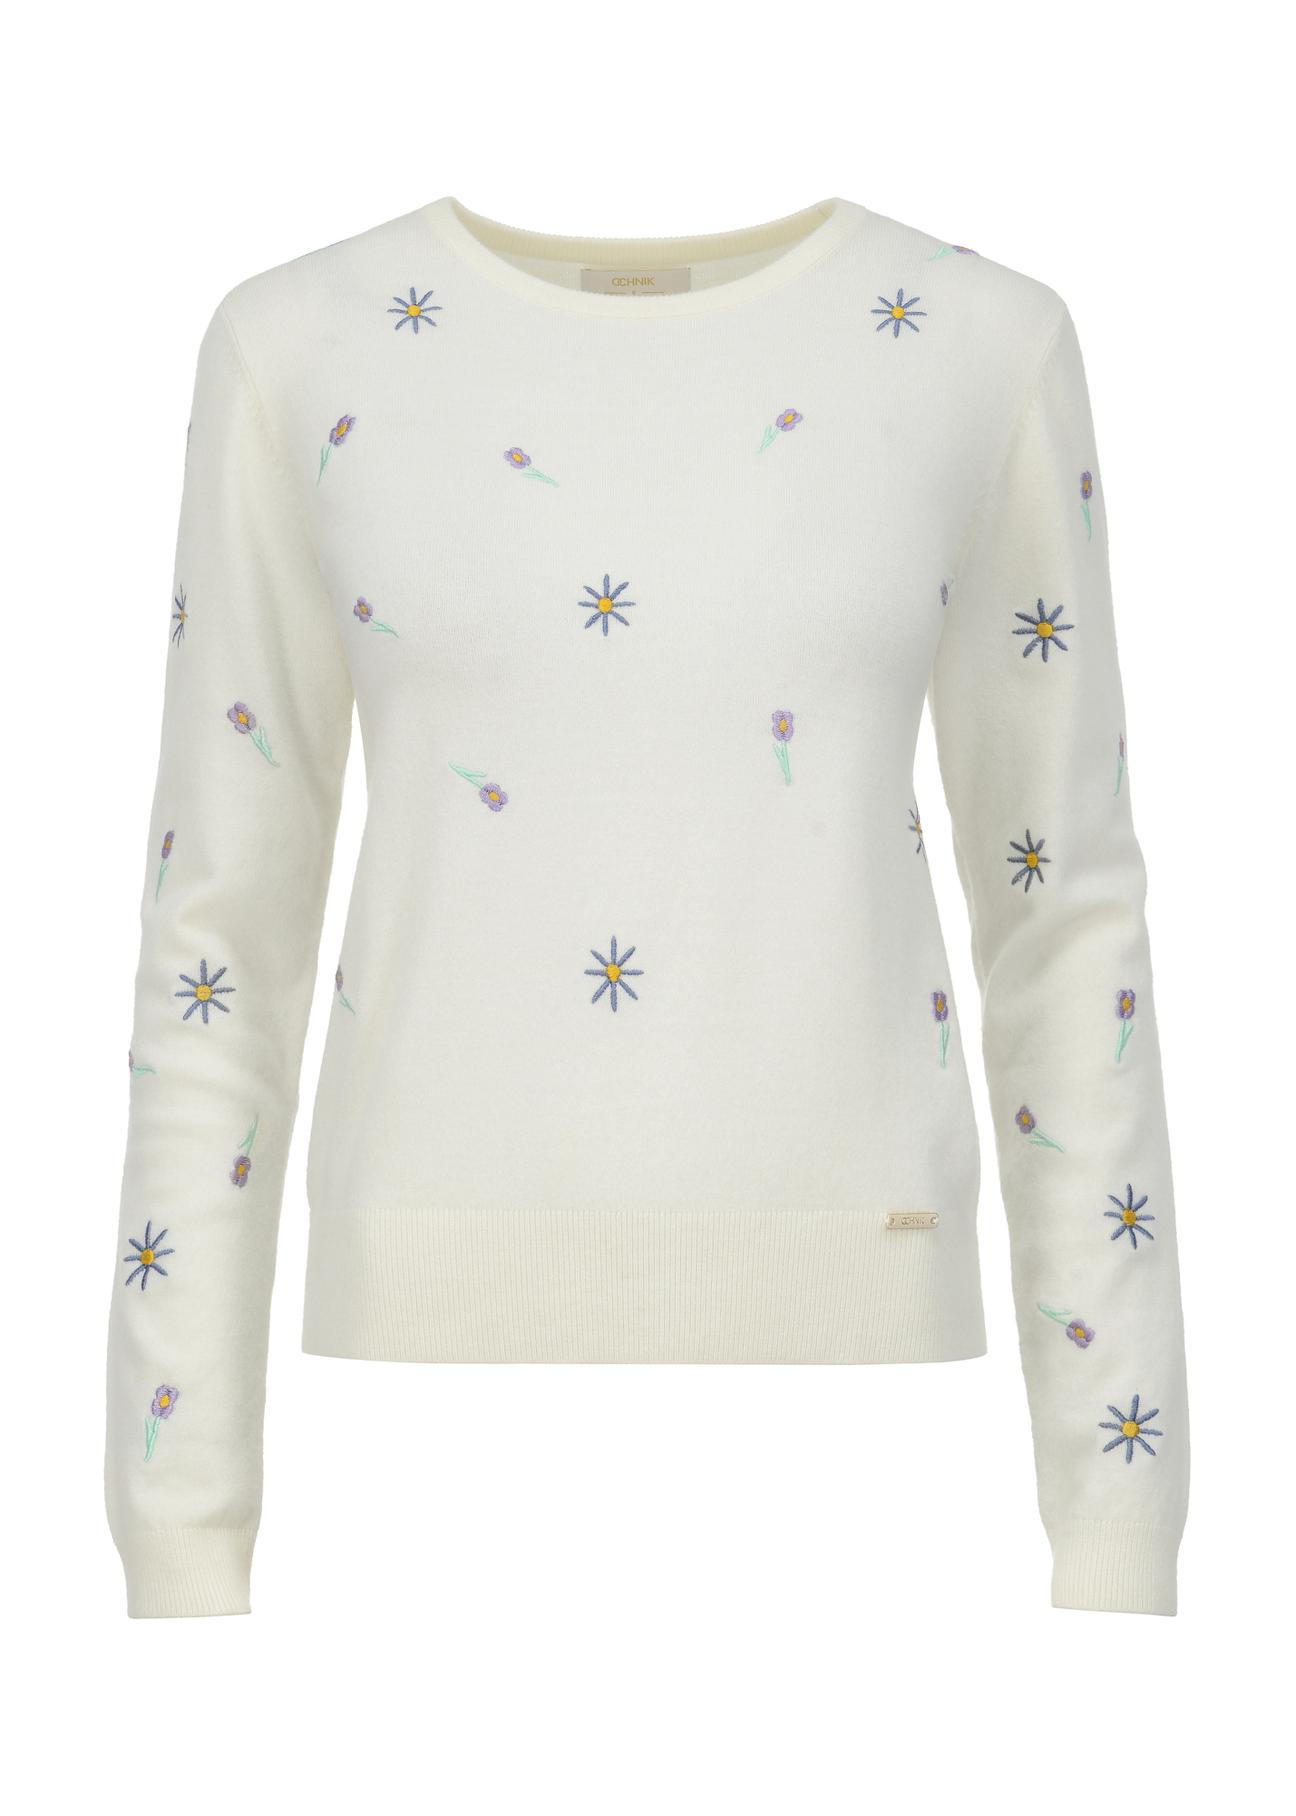 Biały sweter damski z haftem SWEDT-0176-11(W23)